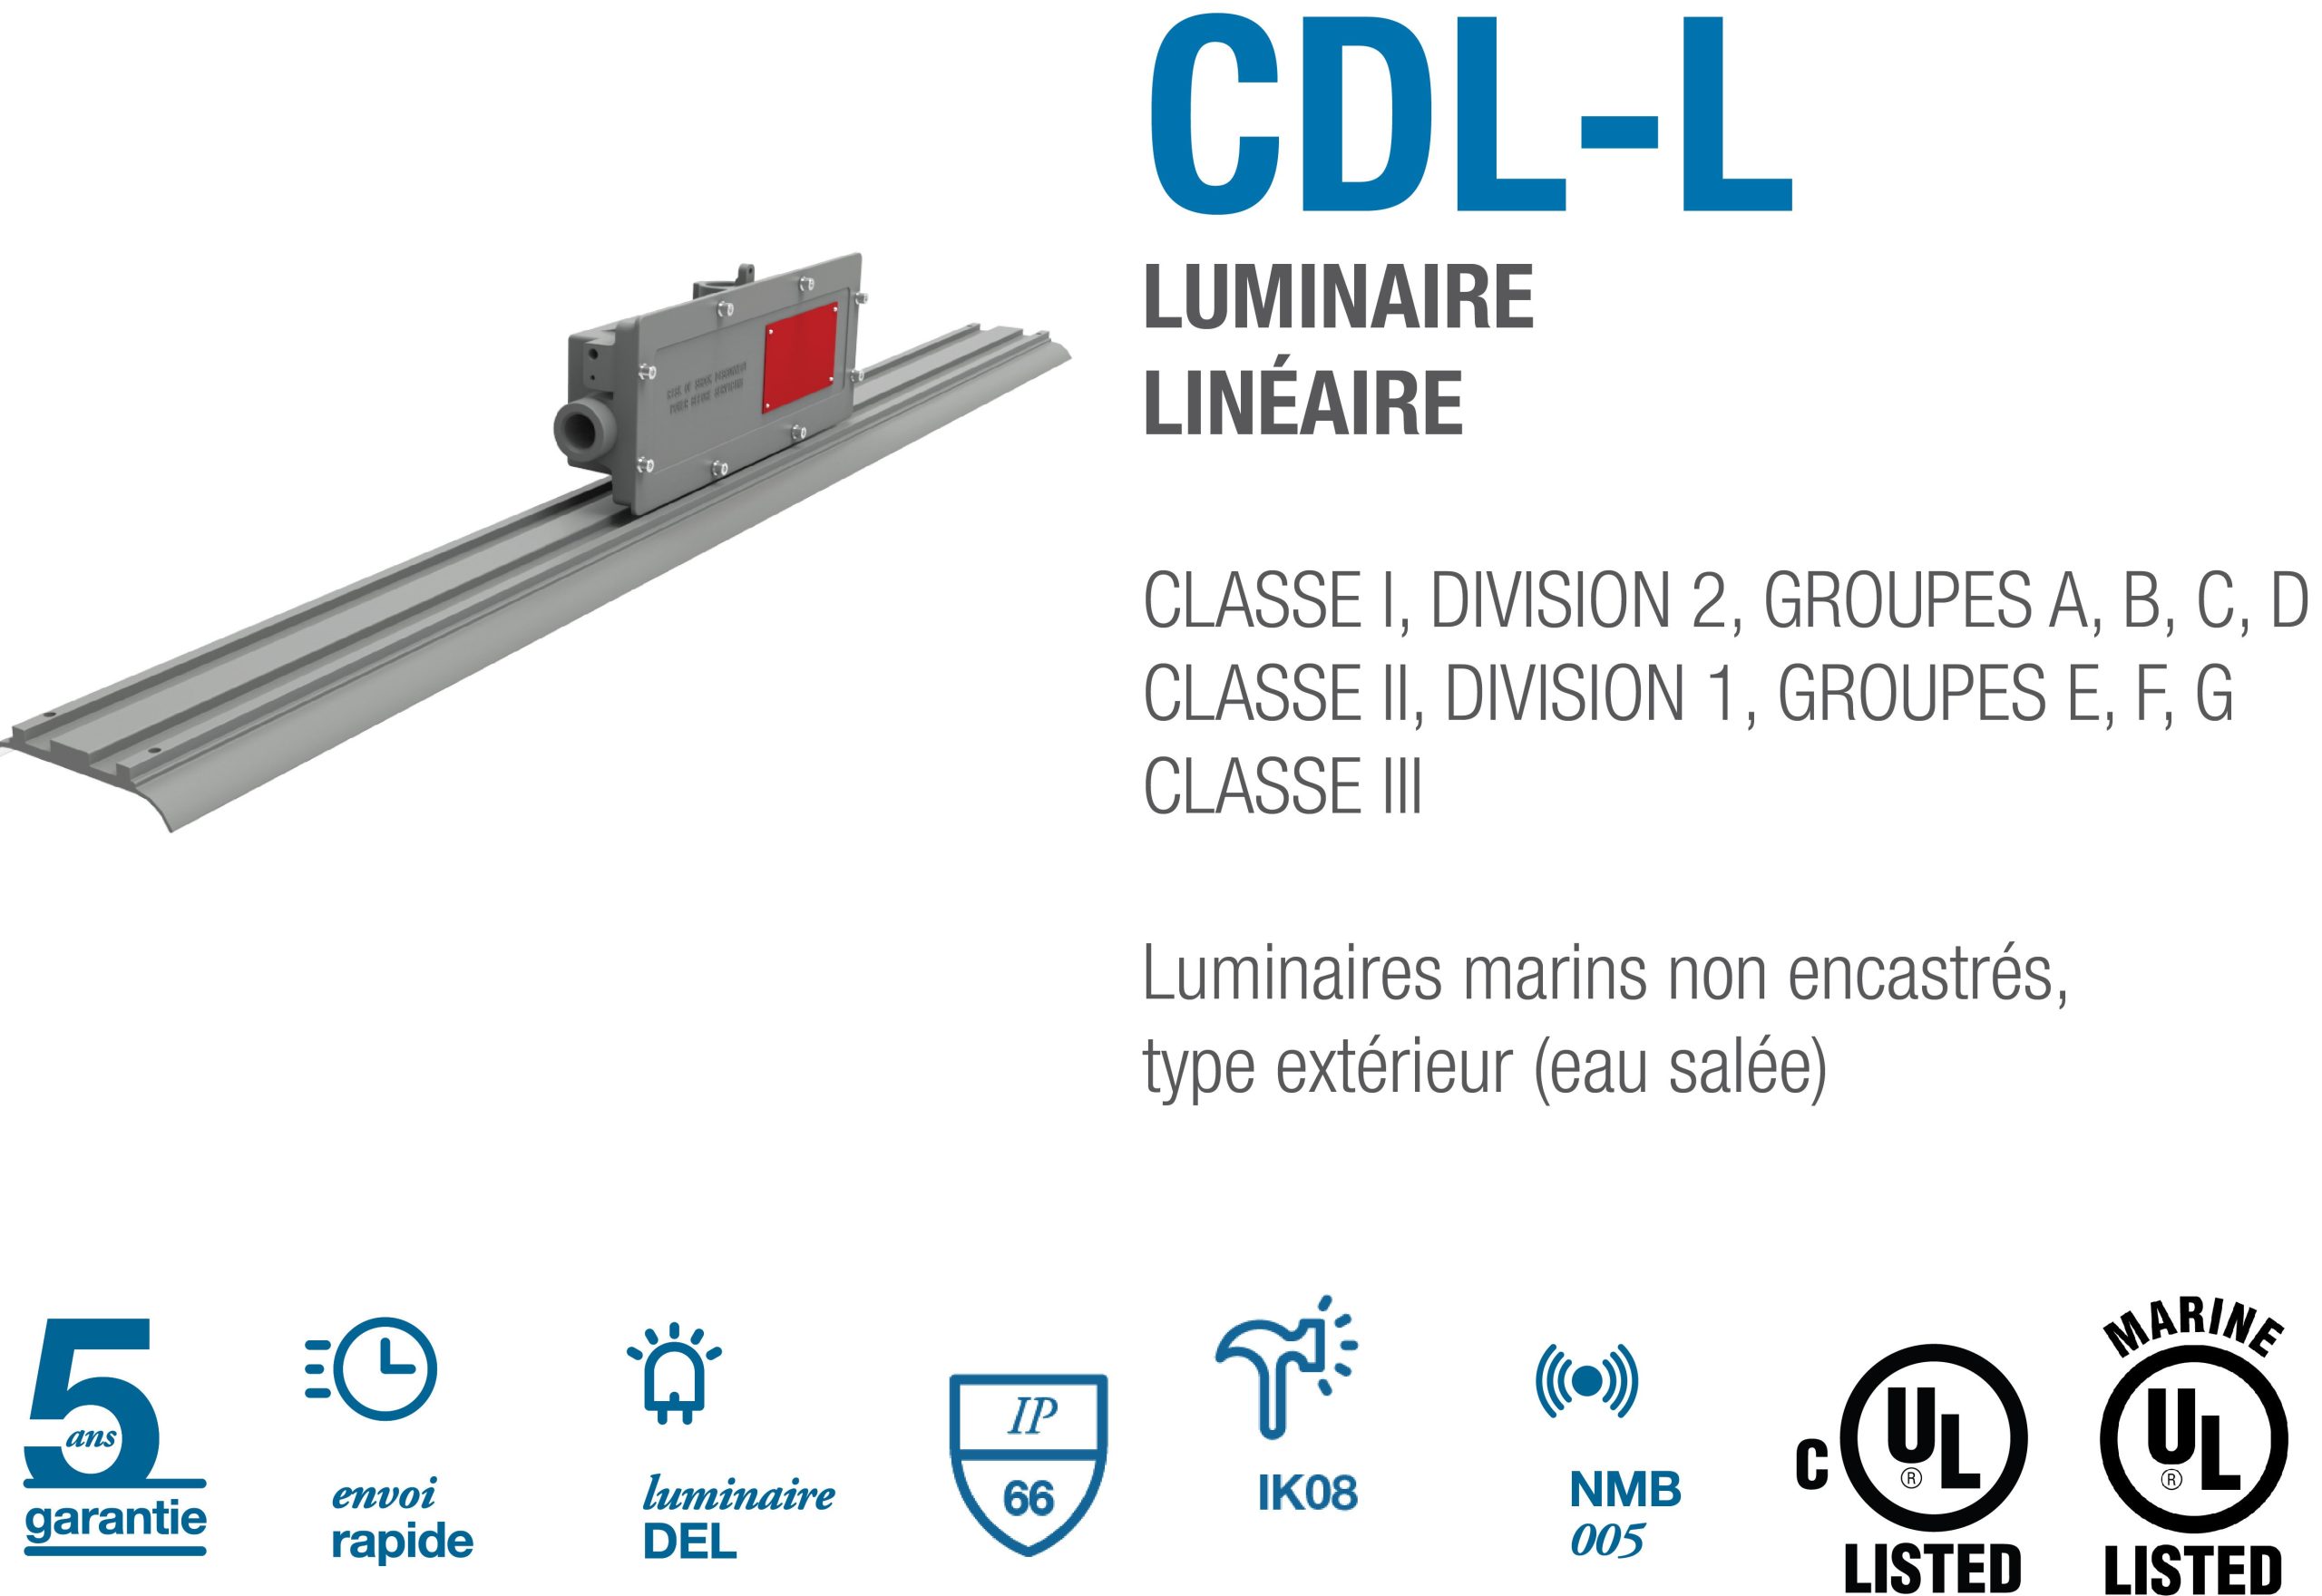 Image_CDL-L_FR.jpg